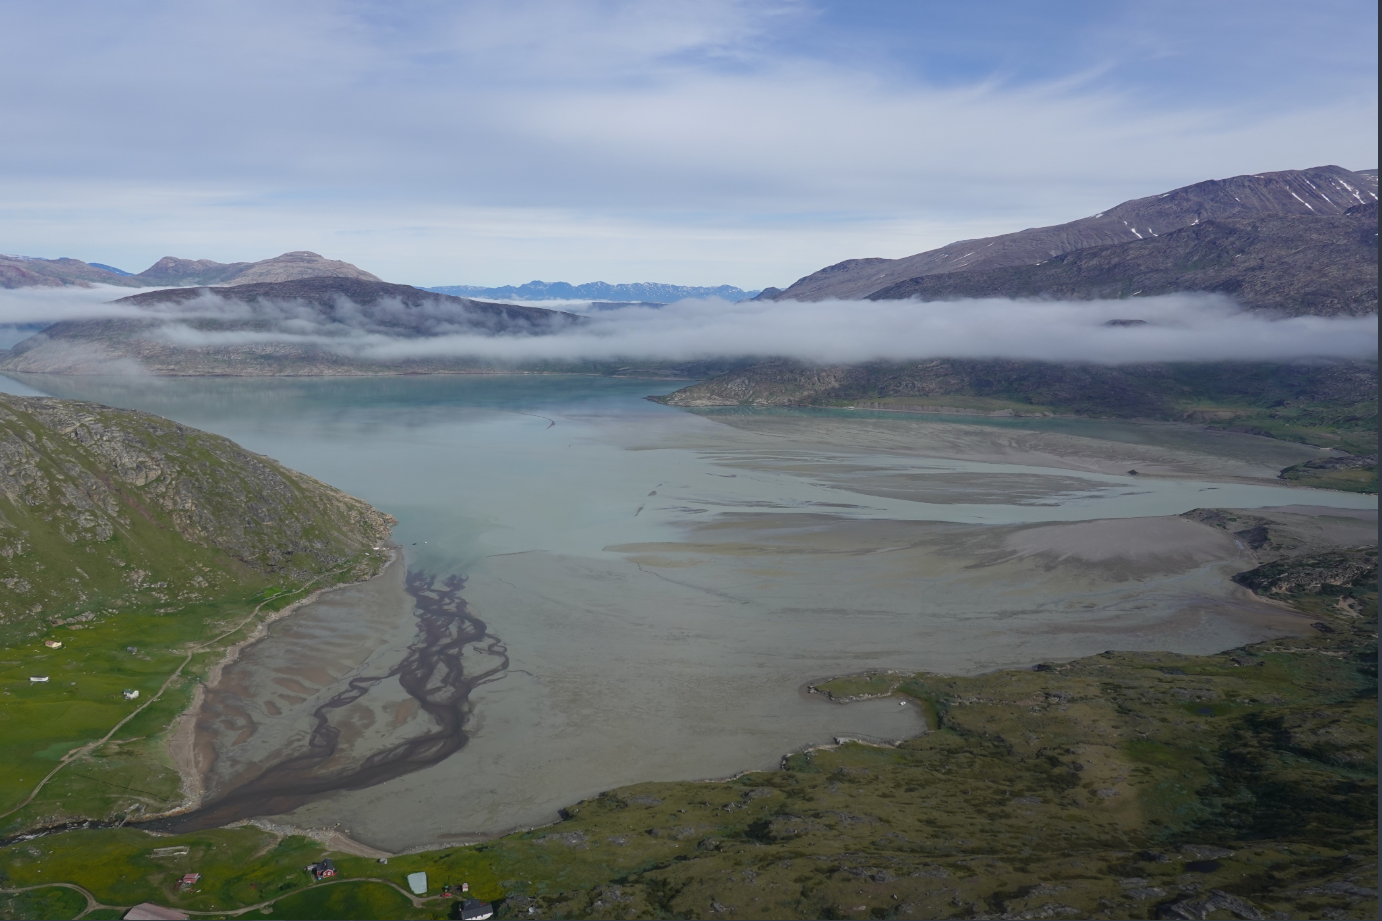 Τσιμέντο να γίνει: Όσο οι πάγοι λιώνουν, η πολύτιμη άμμος της Γροιλανδίας αποκαλύπτεται